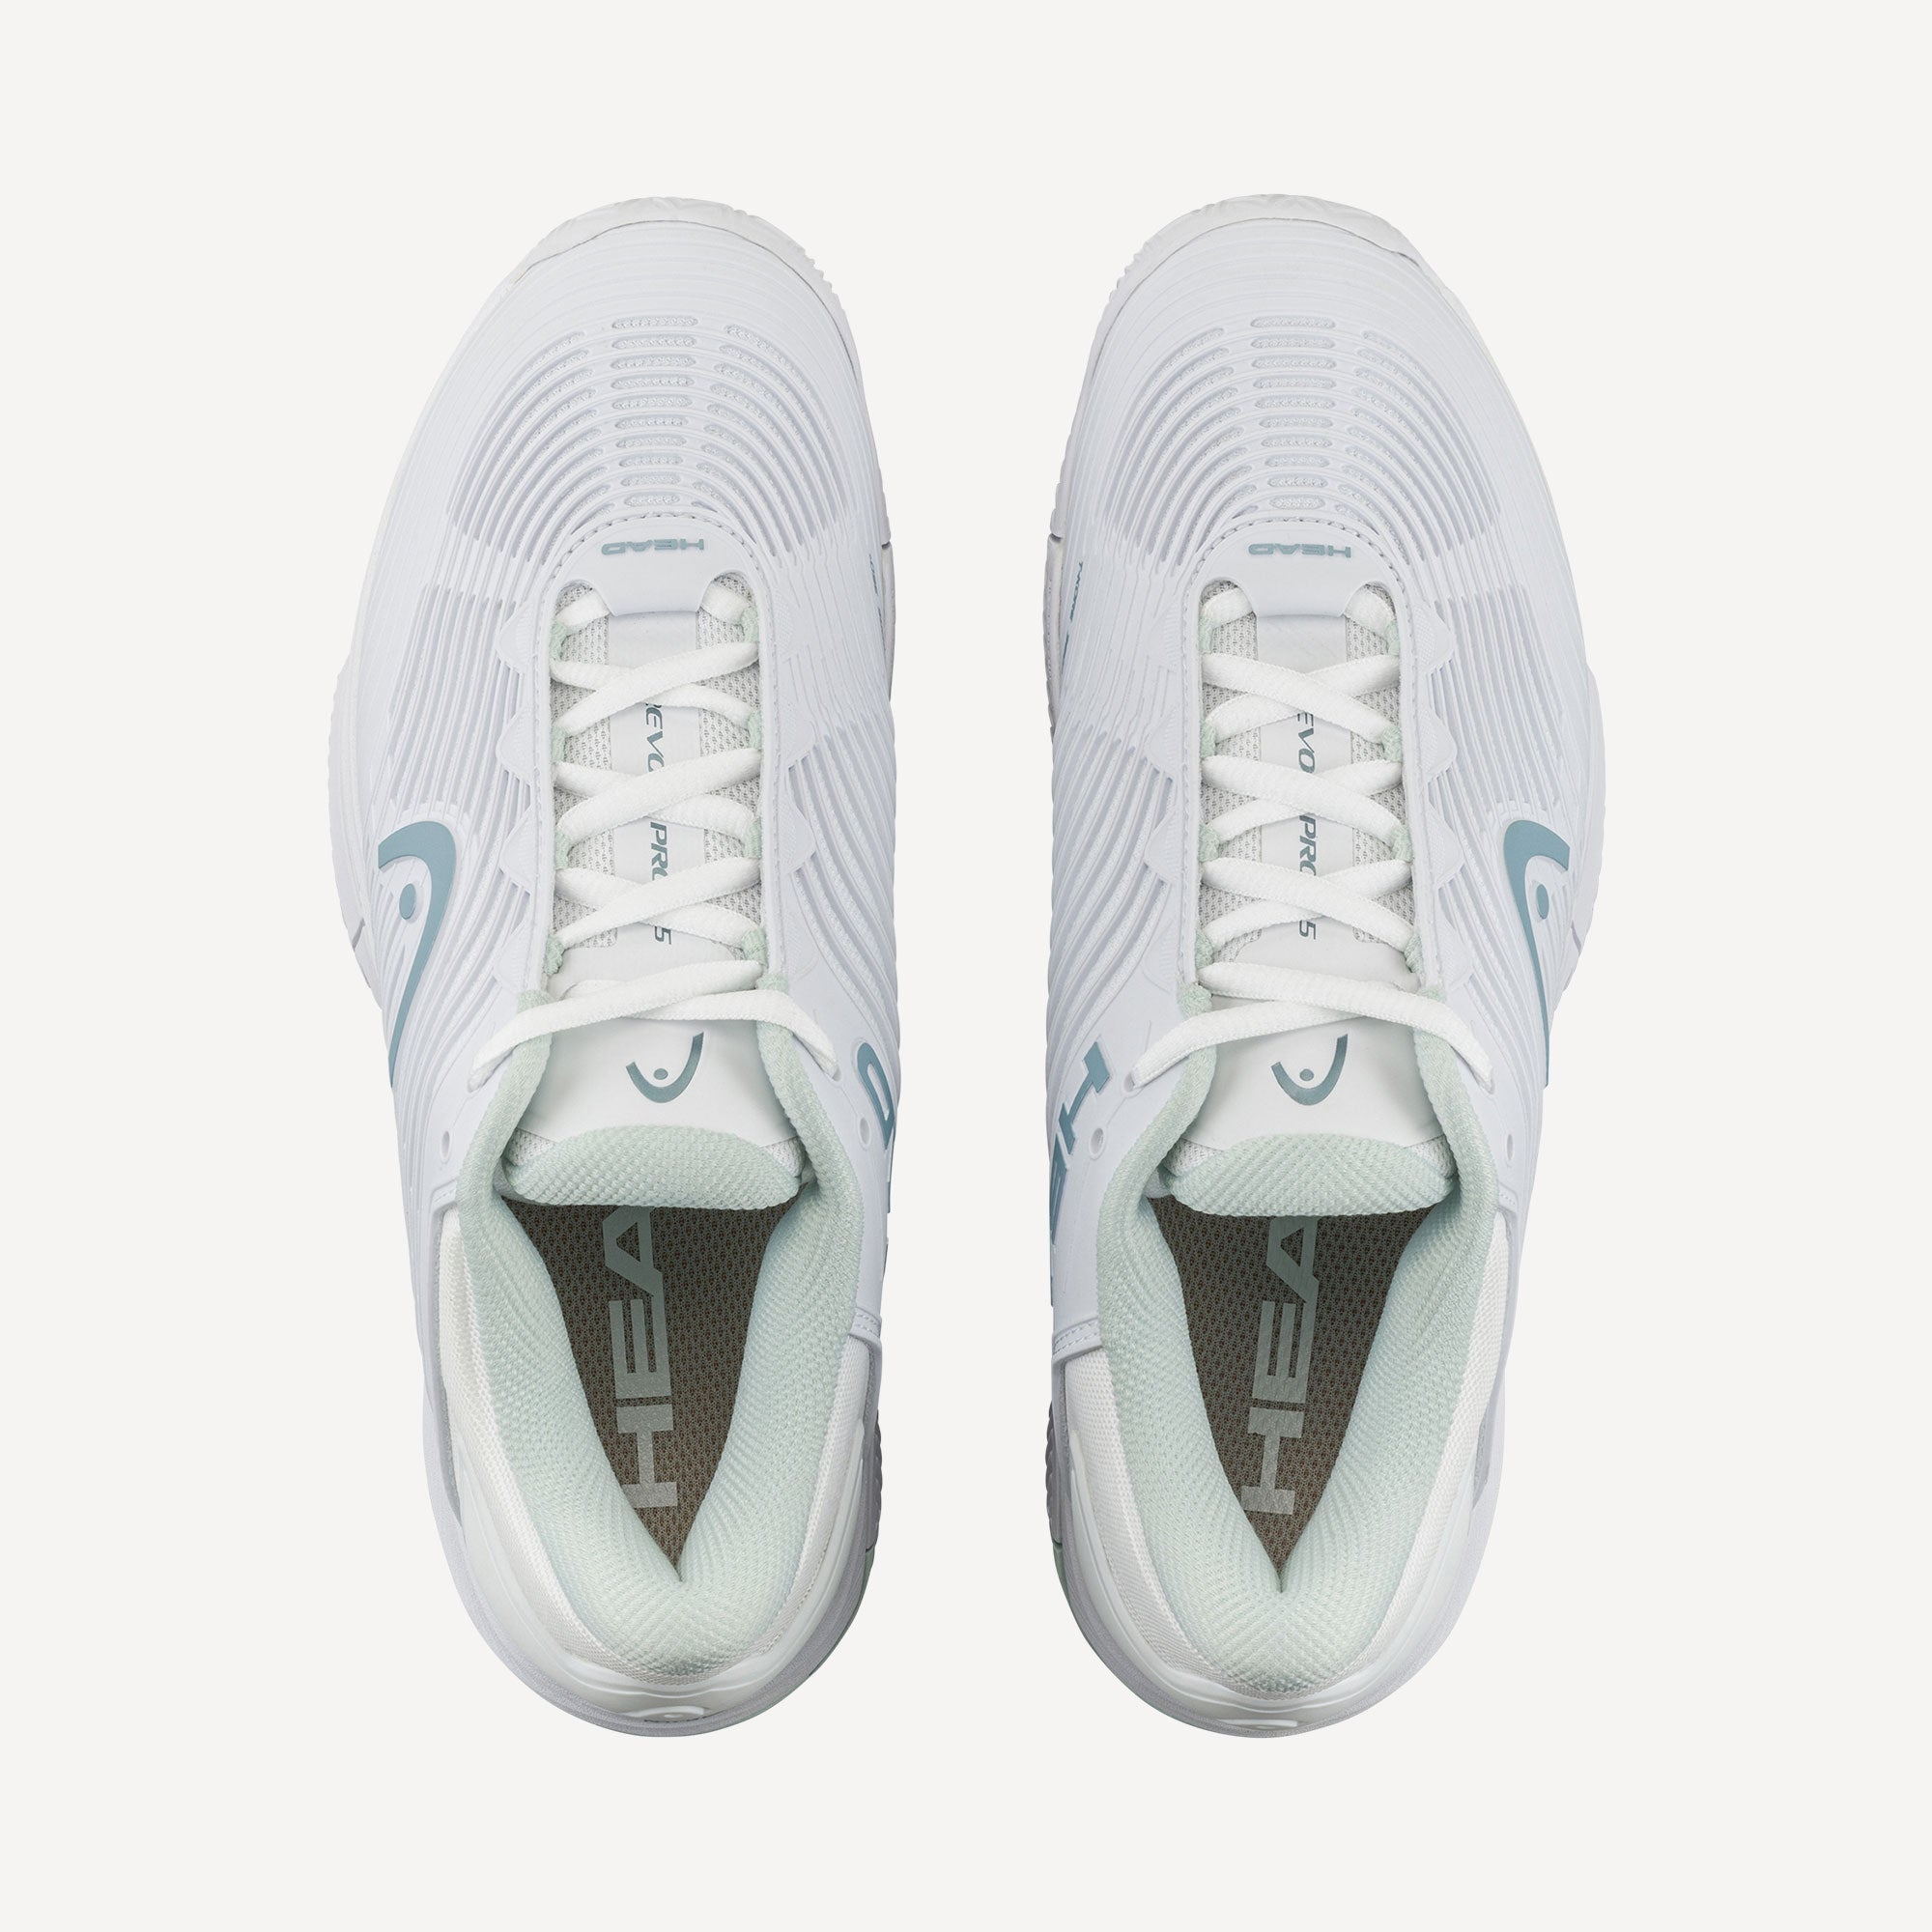 HEAD Revolt Pro 4.5 Women's Clay Court Tennis Shoes - White (4)